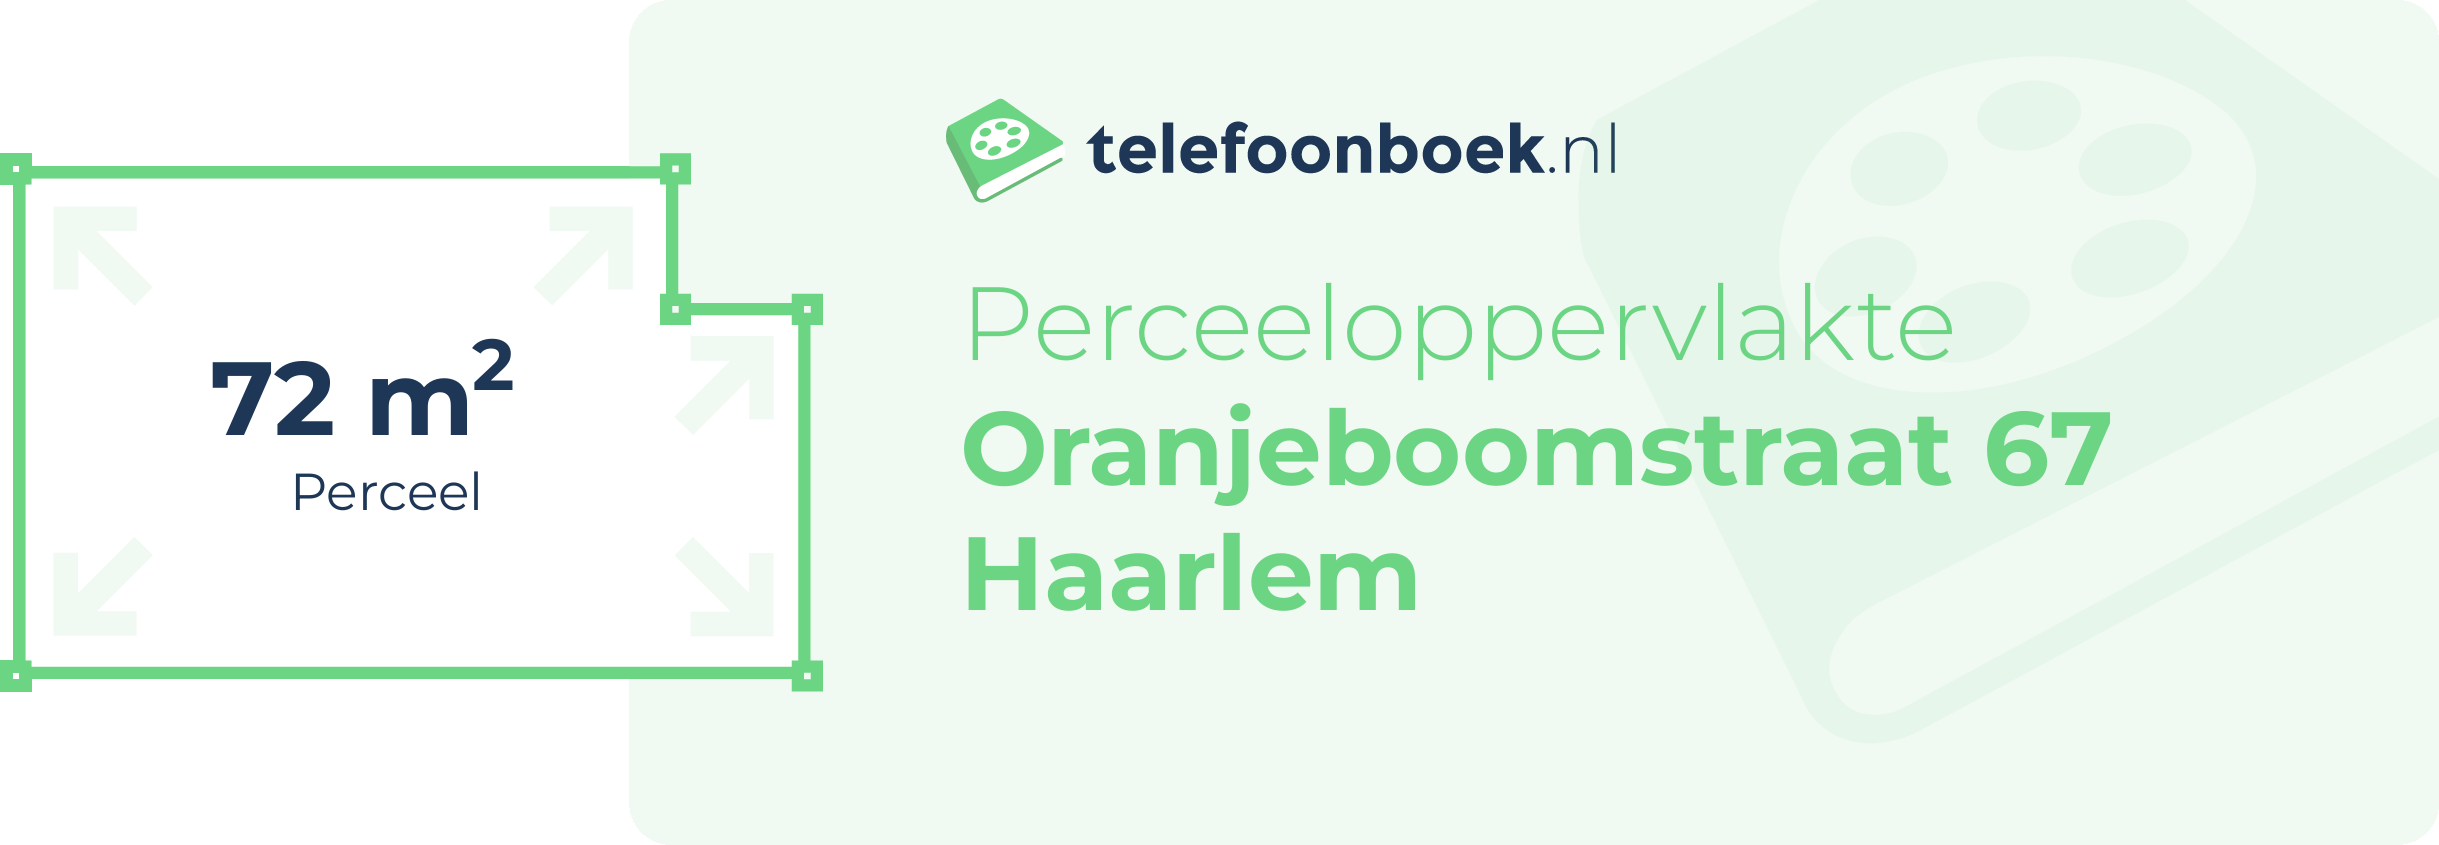 Perceeloppervlakte Oranjeboomstraat 67 Haarlem